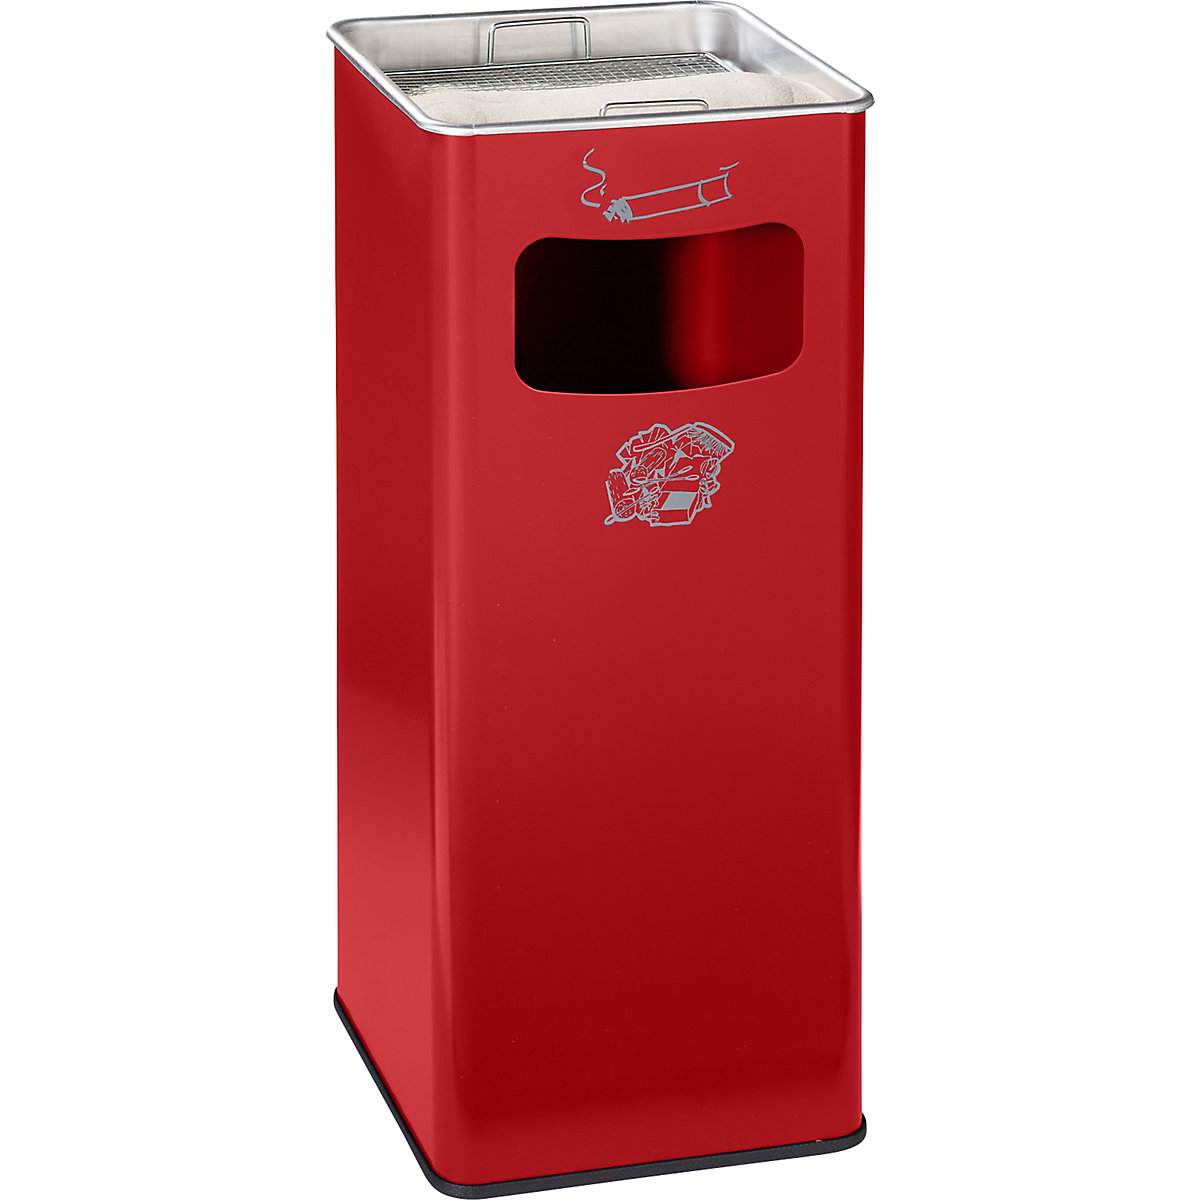 VAR – Combiné cendrier-poubelle, capacité 53 l, l x h x p 330 x 705 x 330 mm, tôle d'acier, rouge feu